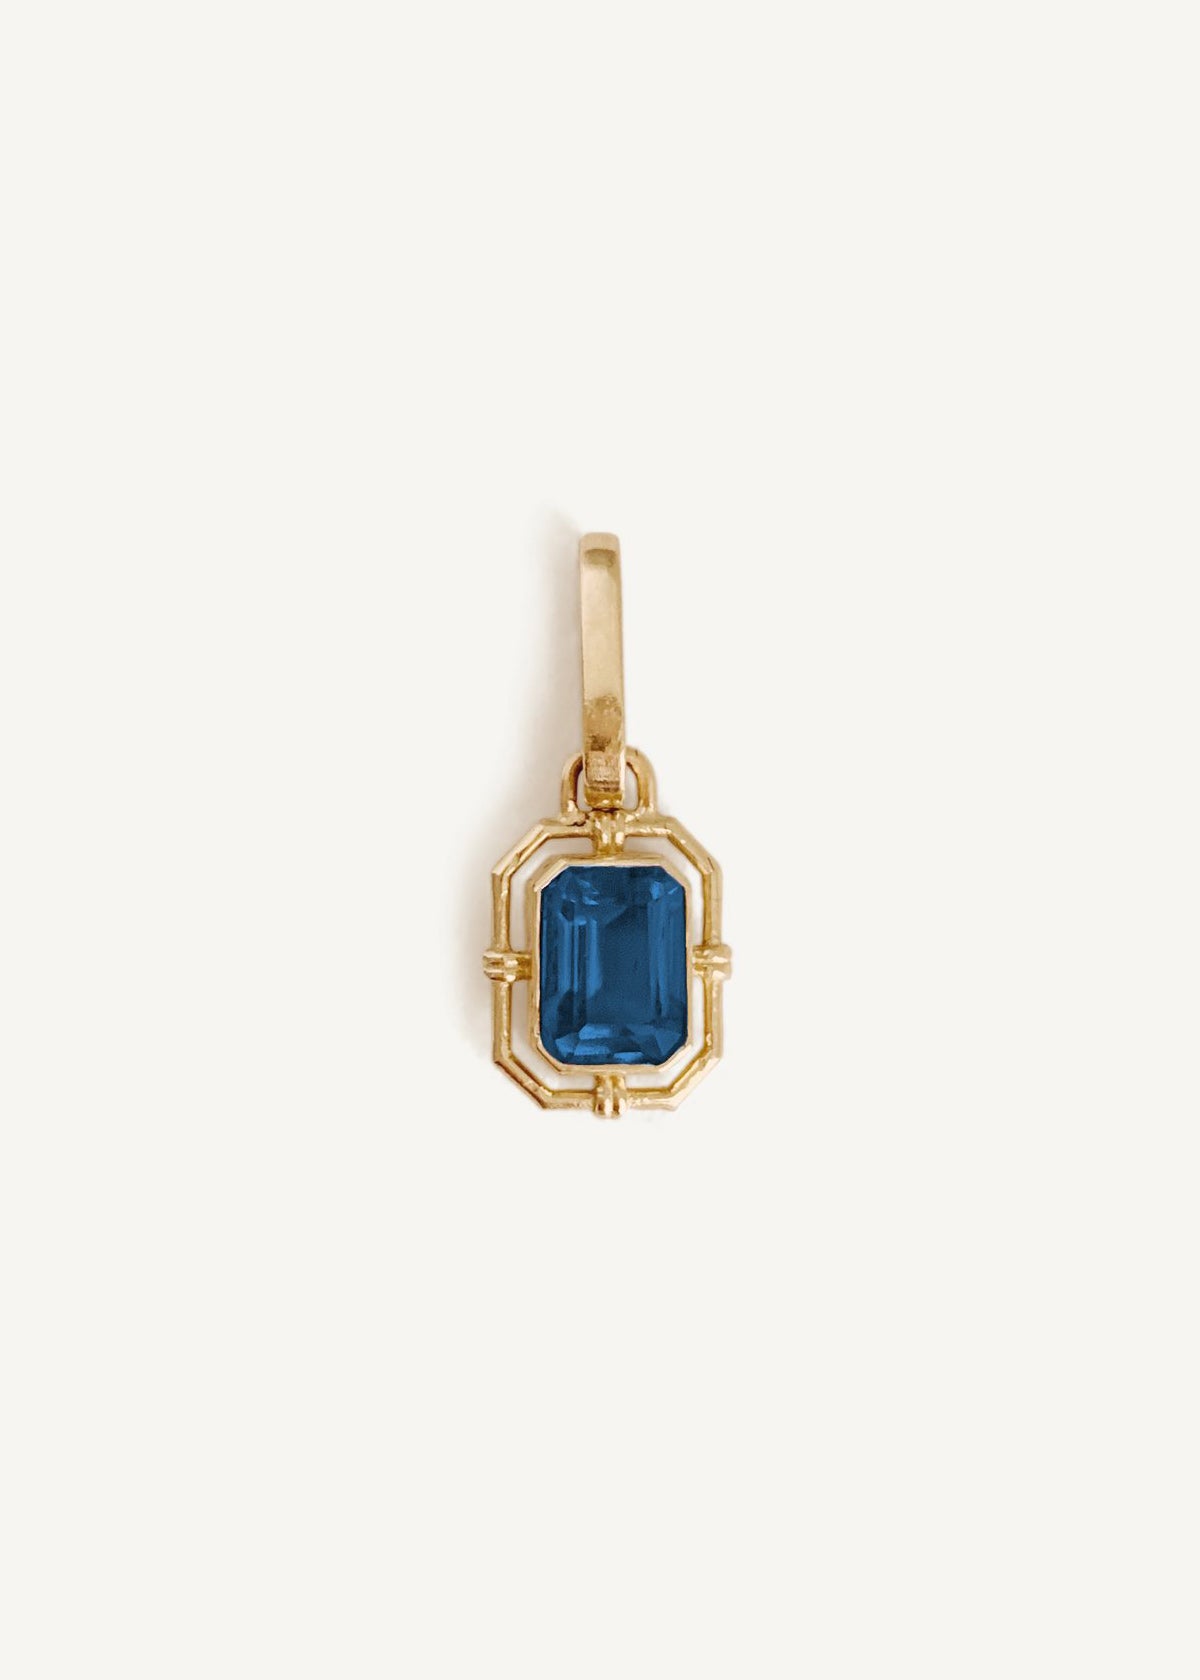 alt="Products Lyra Baguette Pendant I - Blue Sapphire"